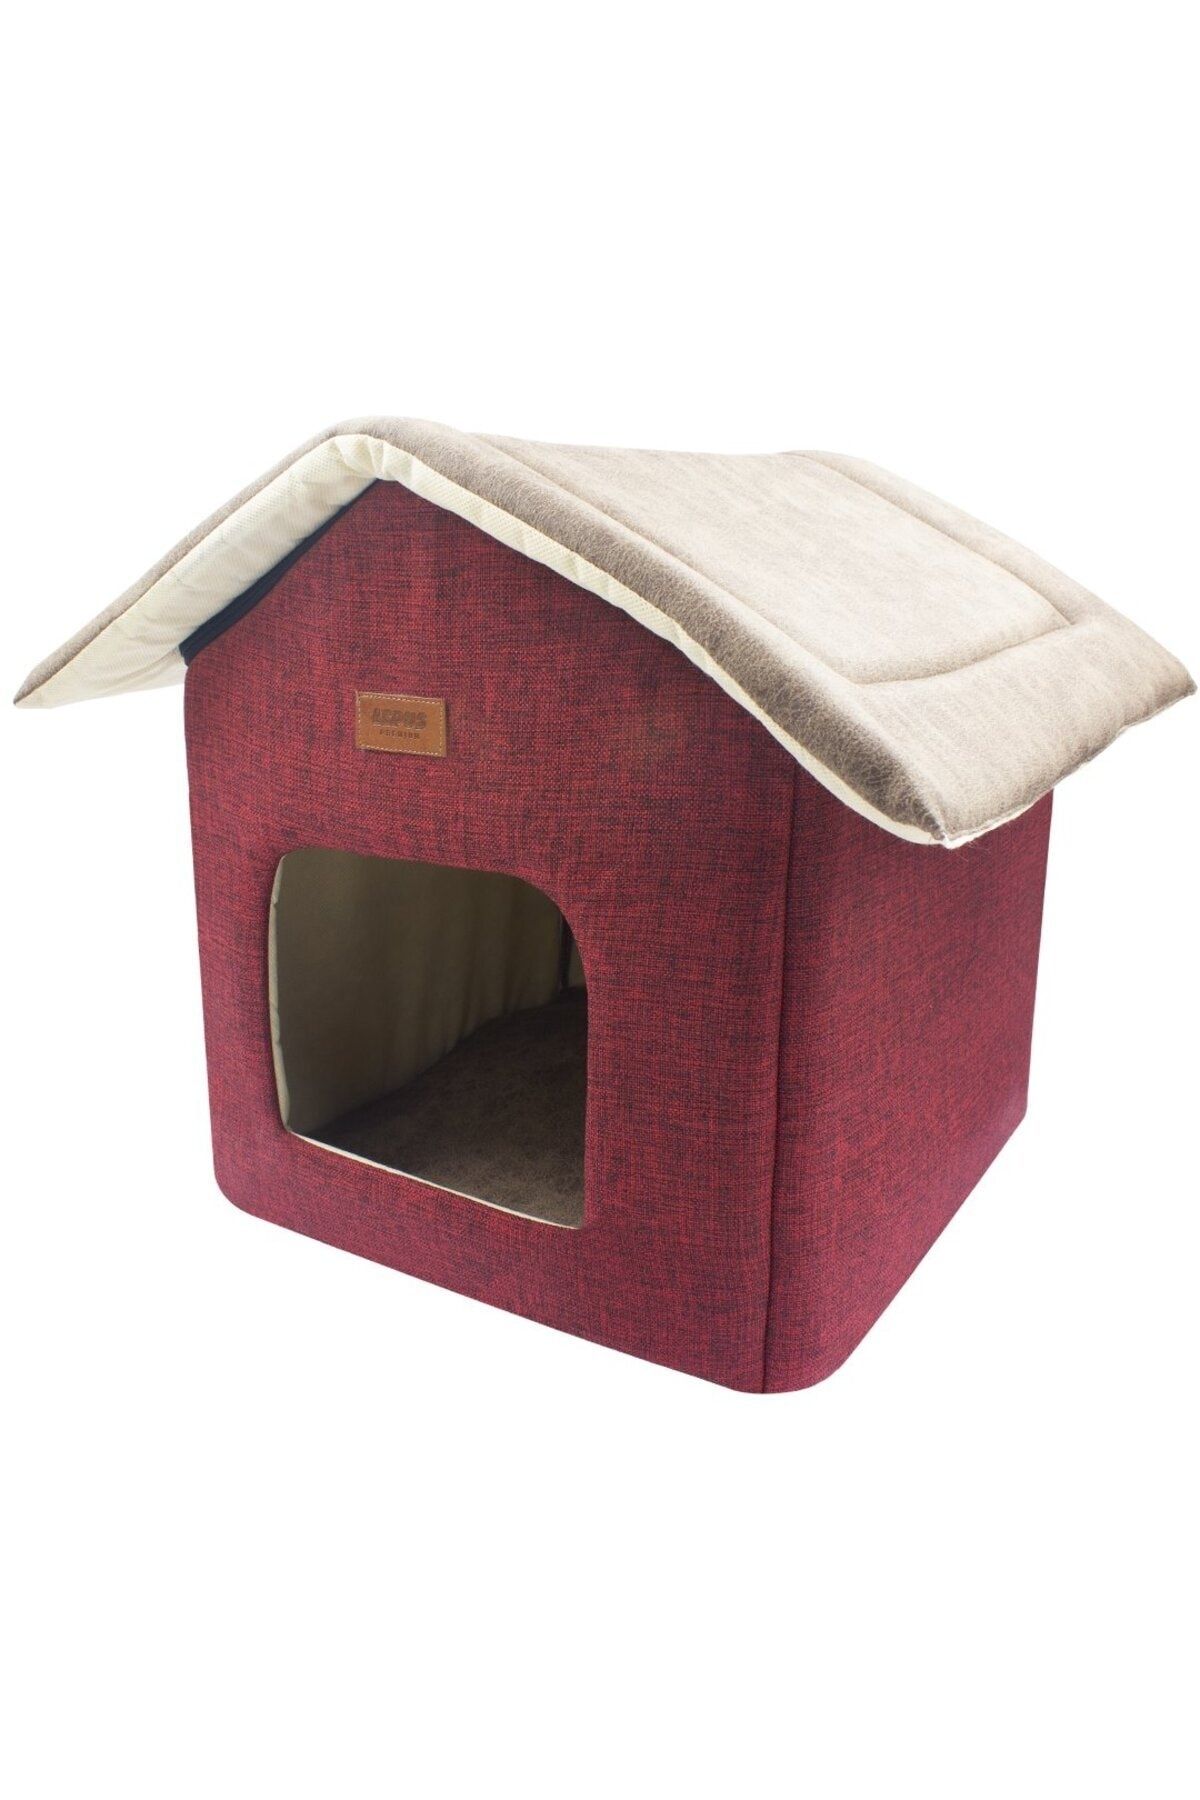 Lepus Kedi ve Köpek Yatağı Shack House Yatak Kırmızı